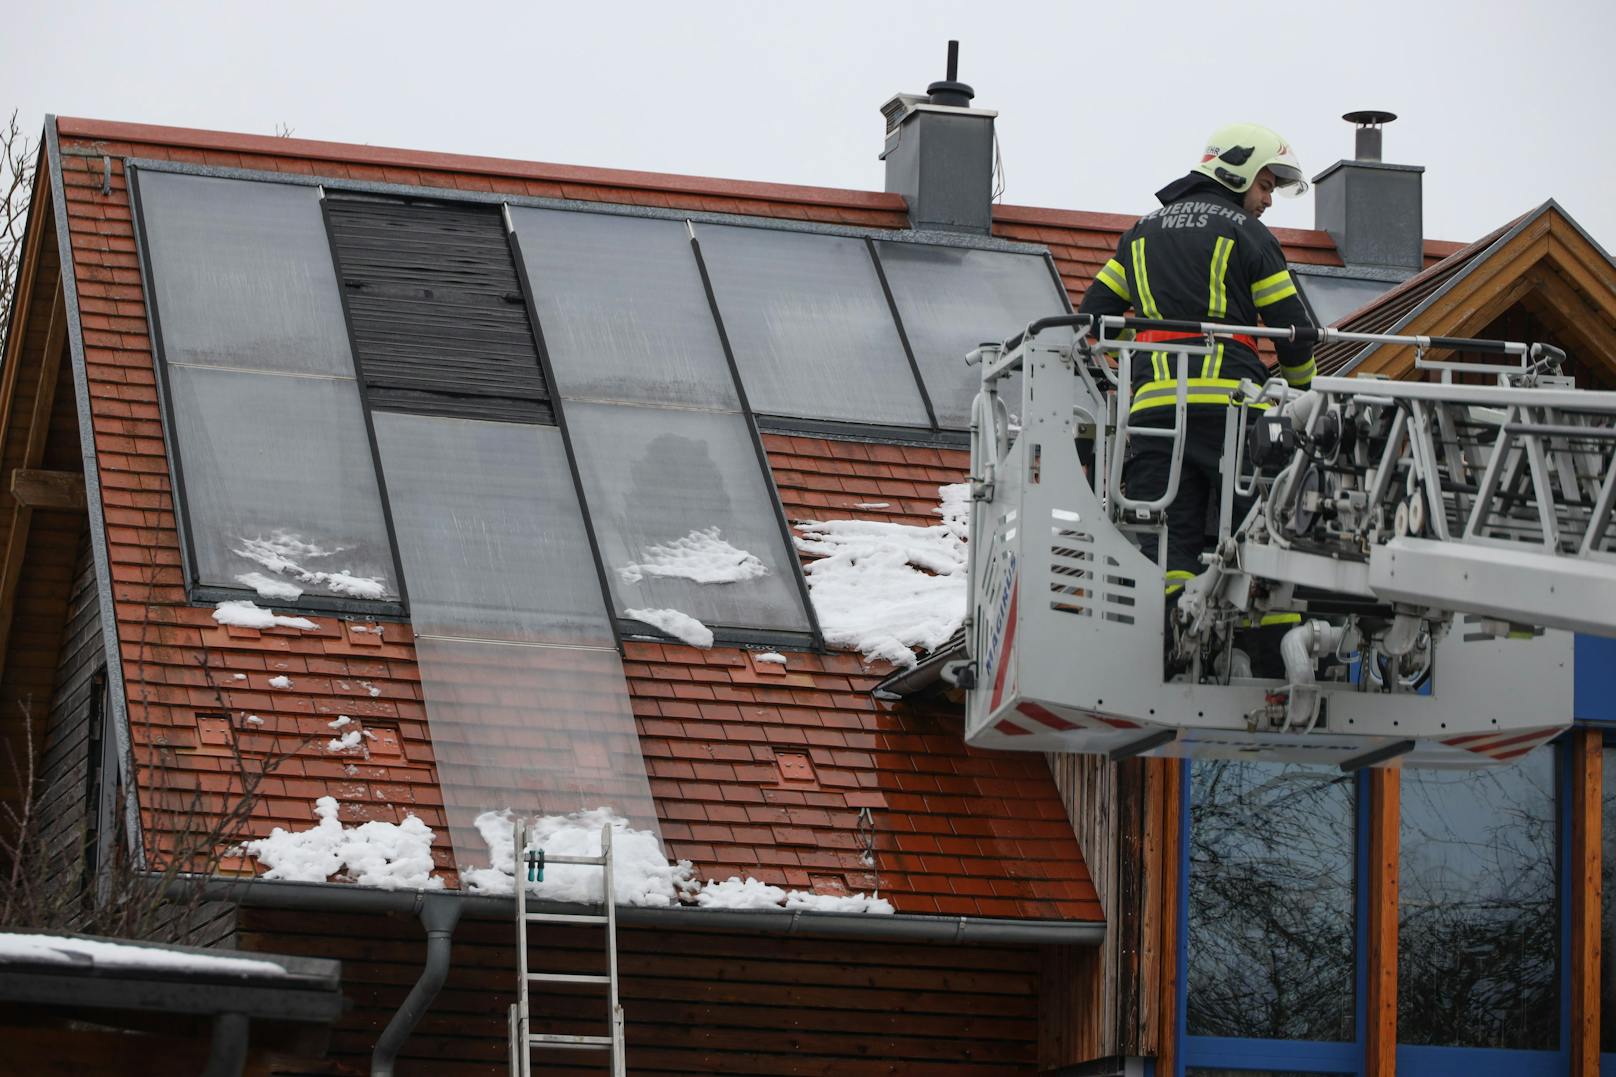 Mittels Drehleiter war die Feuerwehr zum Dach gelangt.